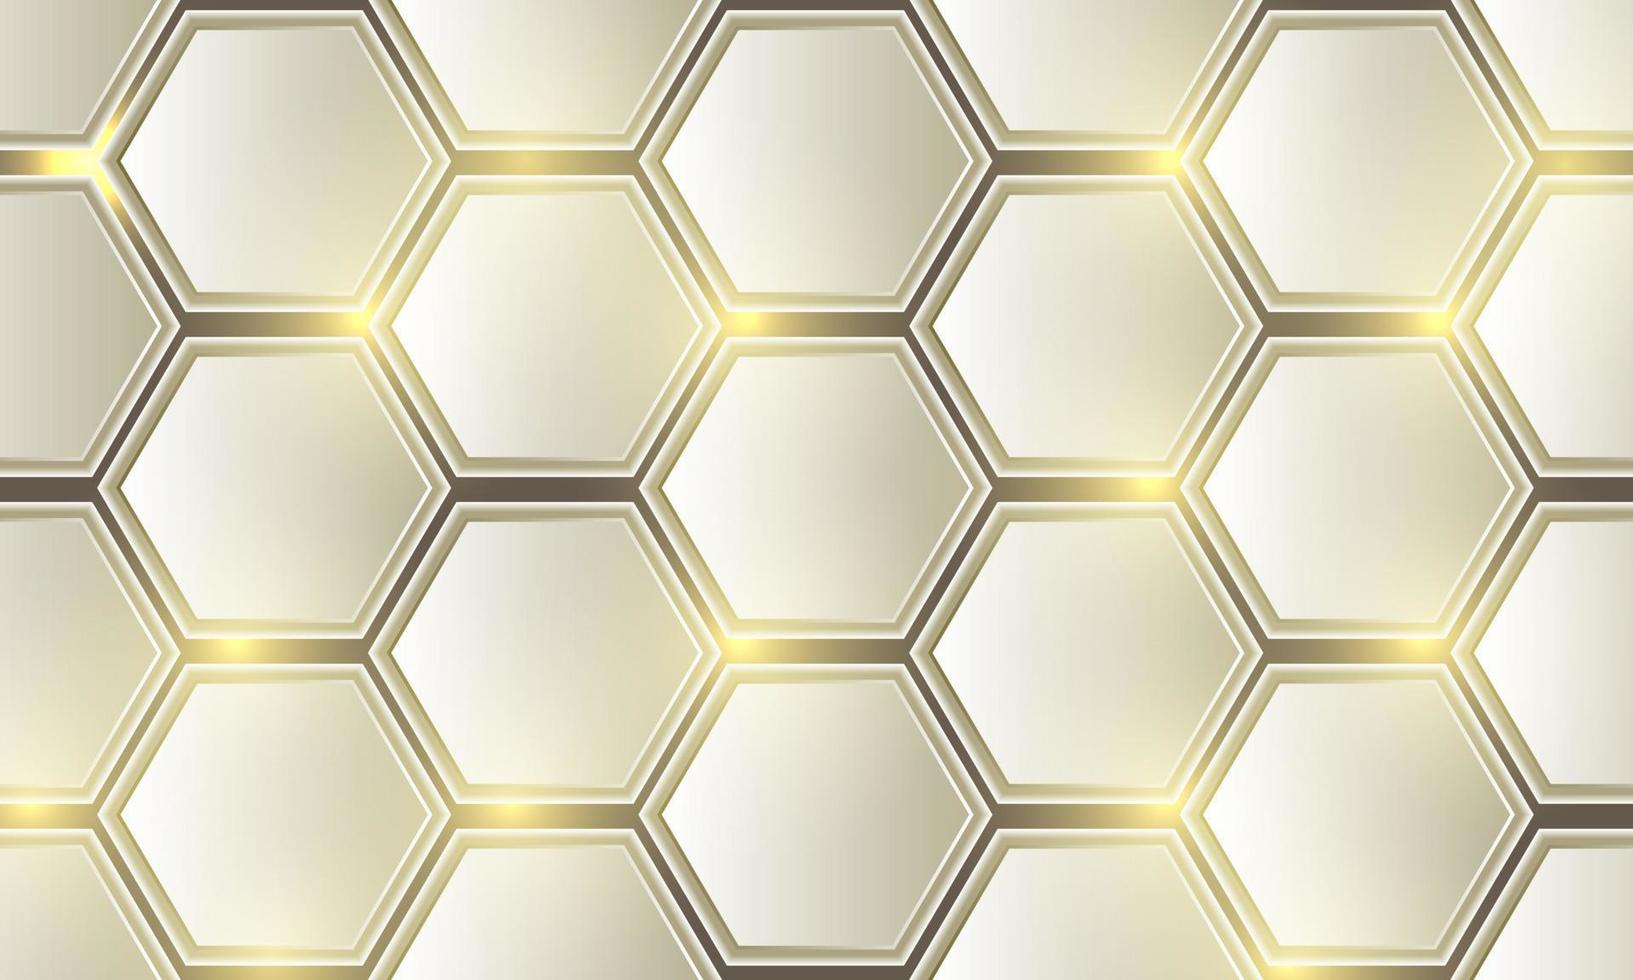 padrão de malha de hexágono dourado abstrato design moderno vetor de fundo de luxo